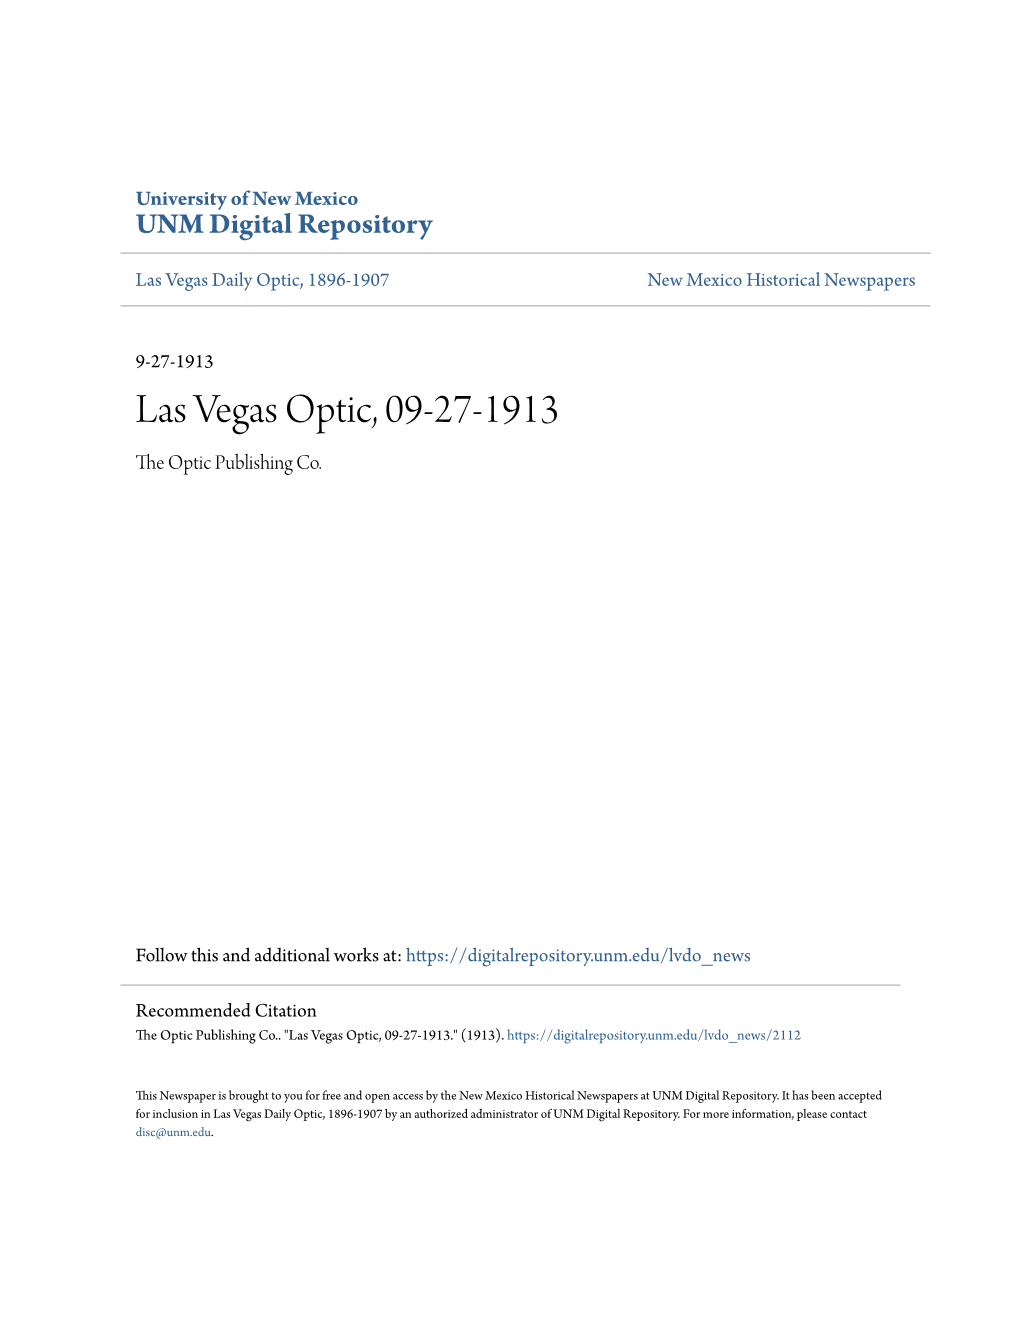 Las Vegas Optic, 09-27-1913 the Optic Publishing Co